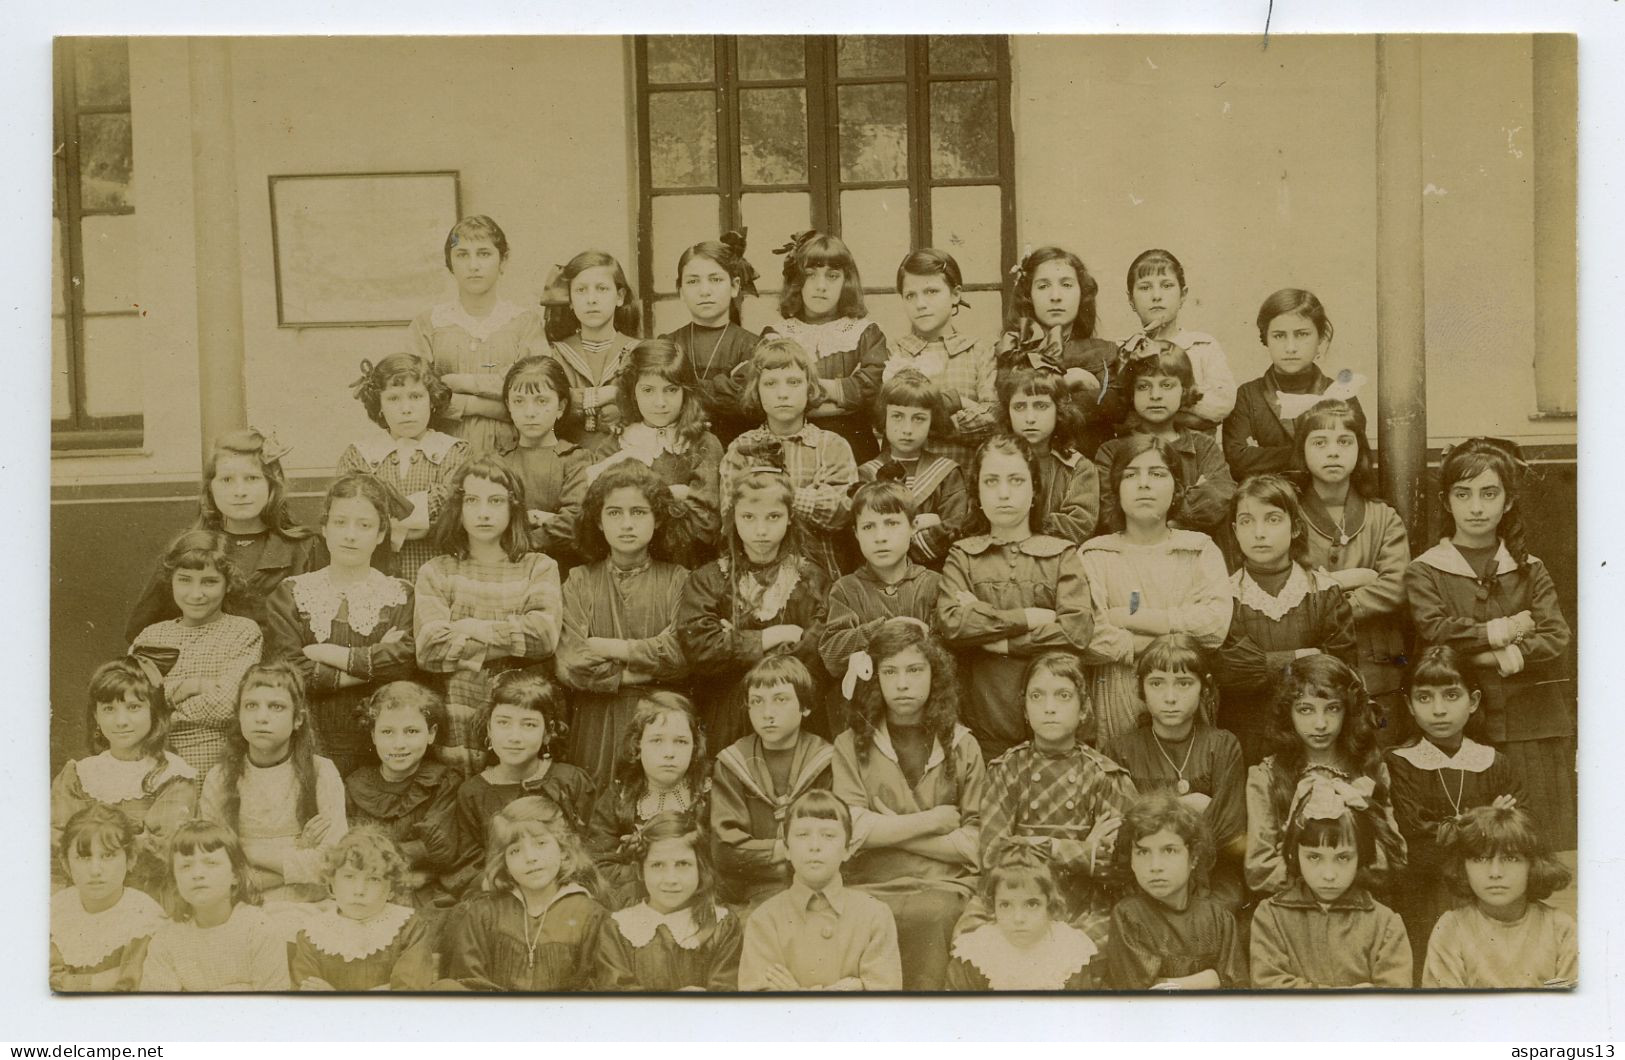 Bône école Caraman carte photo scolaire photographe Auguste Mamain Sétif lot de 10 cartes photos